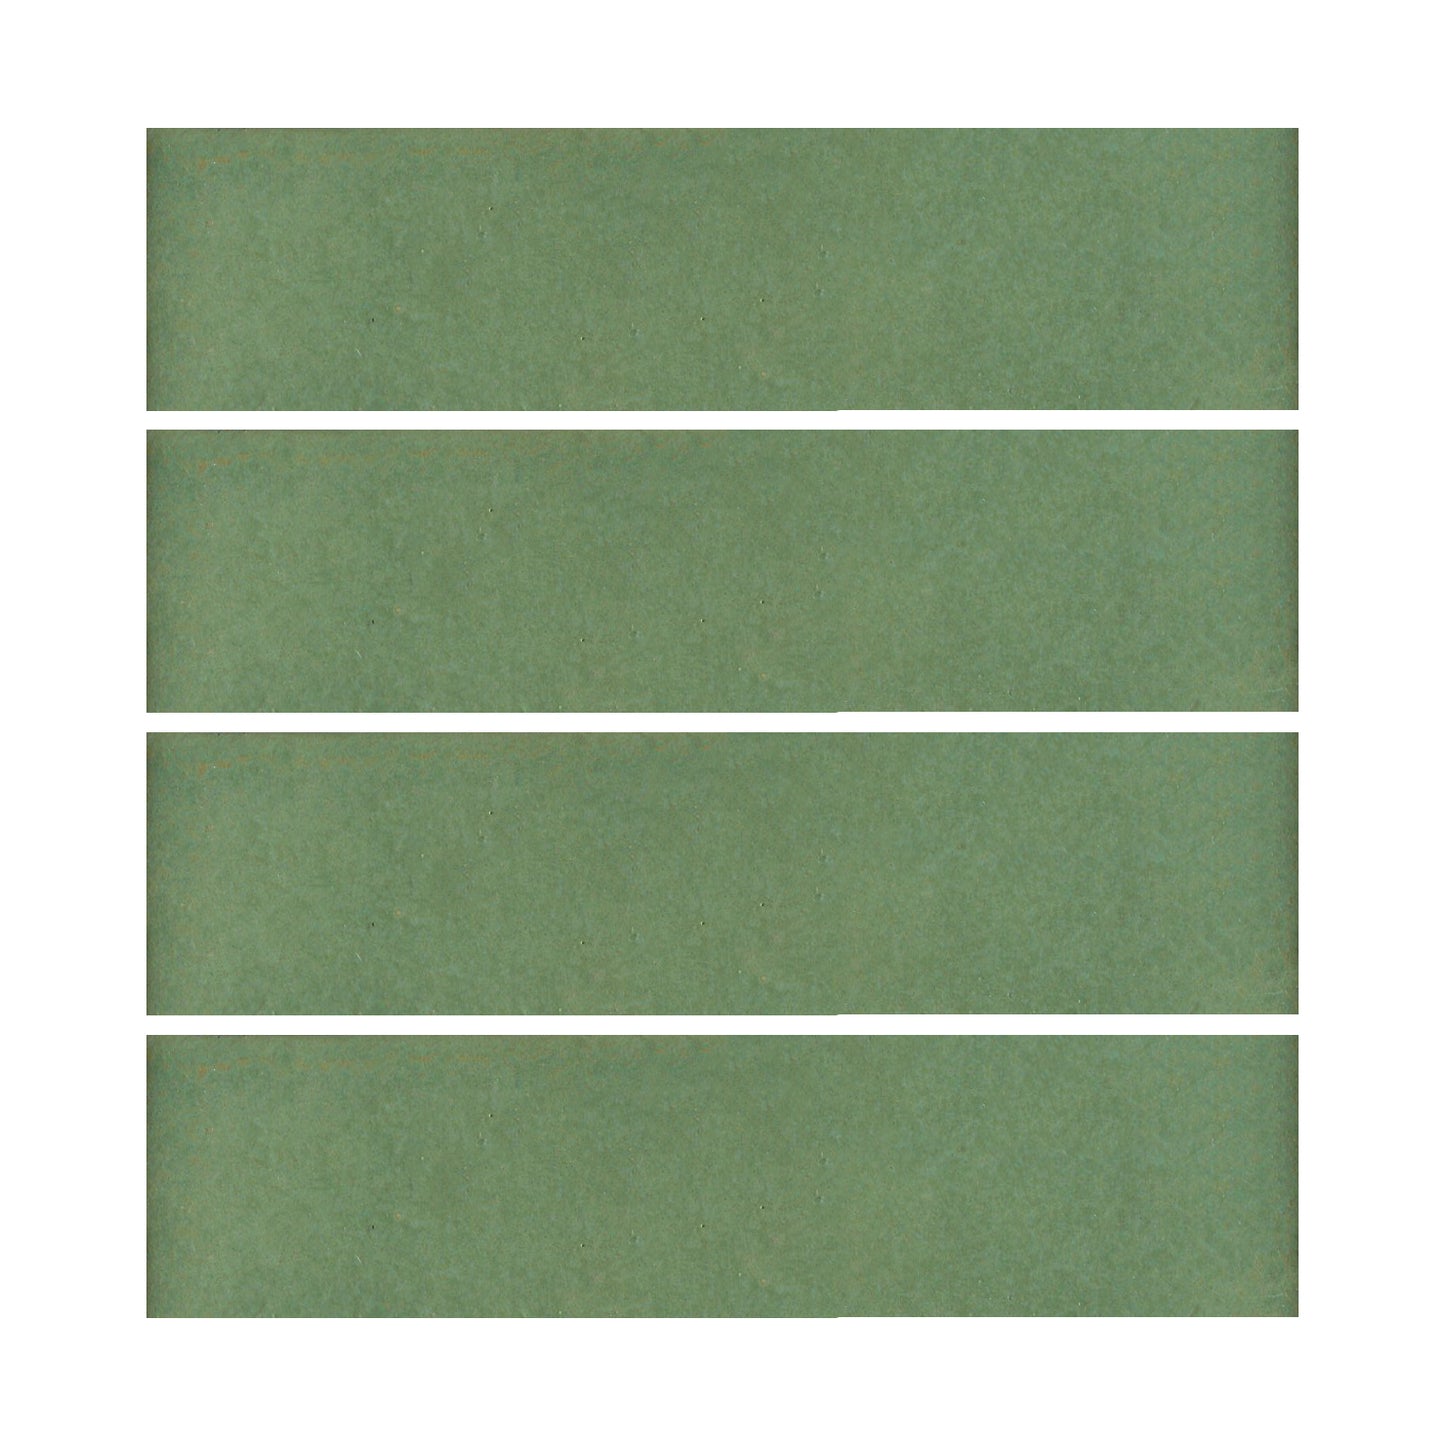 Wasabi green 2x8 field tile